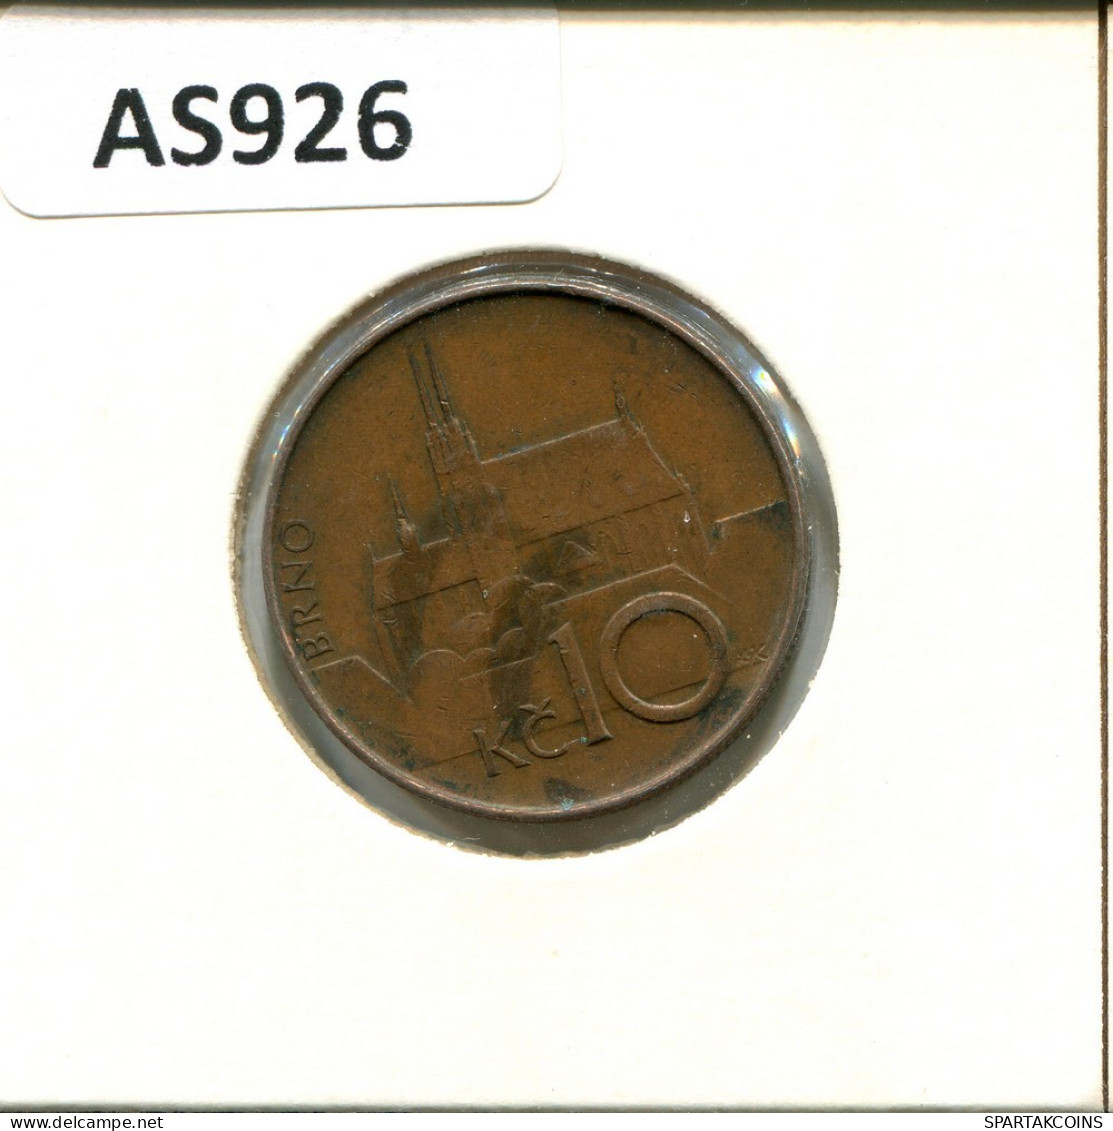 10 KORUN 1993 REPÚBLICA CHECA CZECH REPUBLIC Moneda #AS926.E.A - Tschechische Rep.